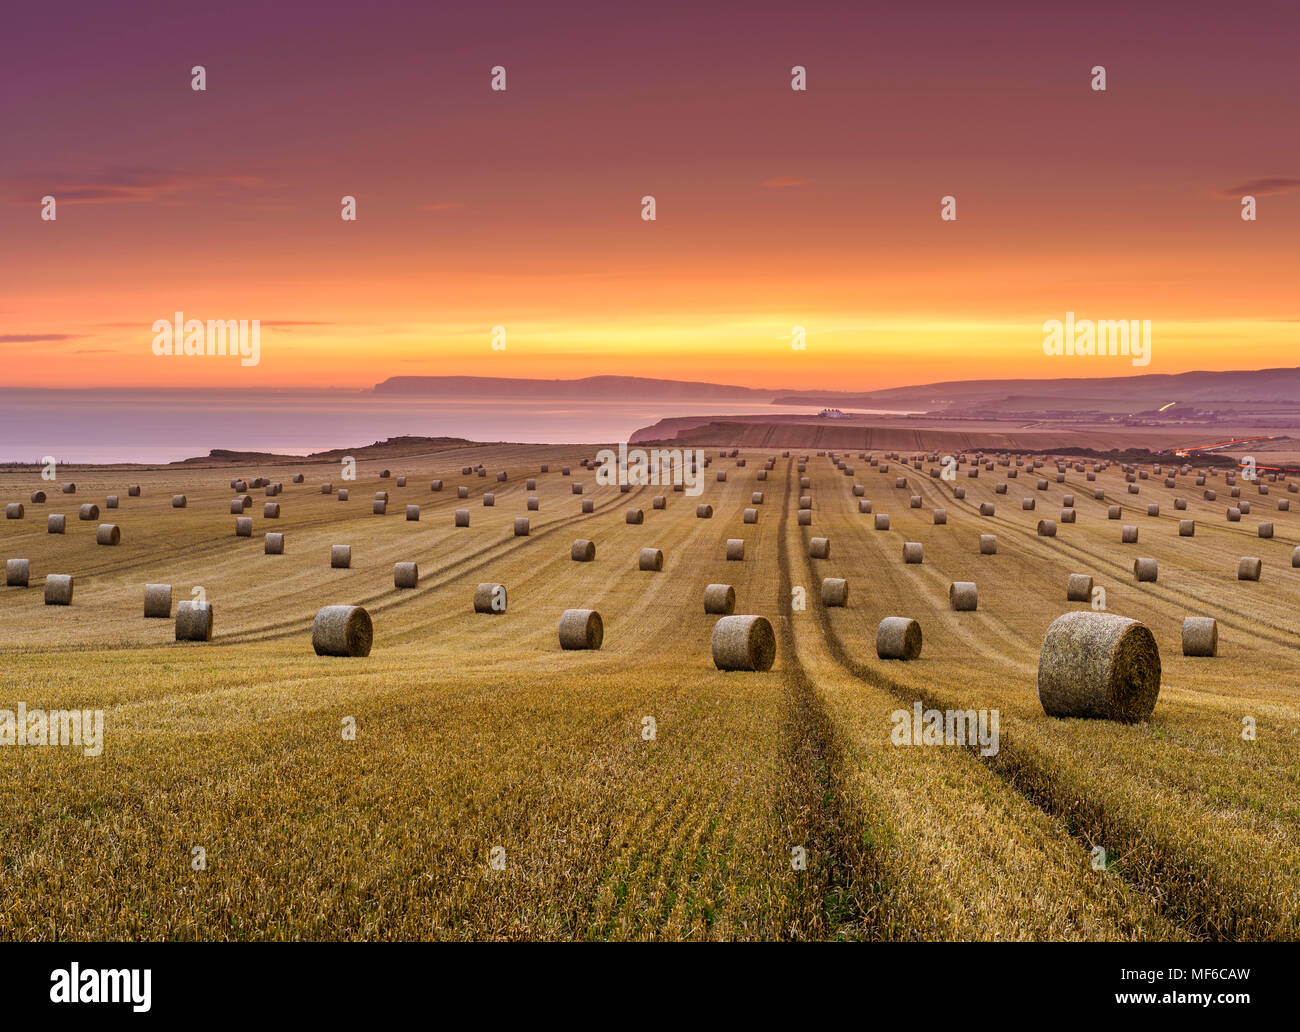 Hay, bottes de paille dans un champ par la mer au coucher du soleil Banque D'Images